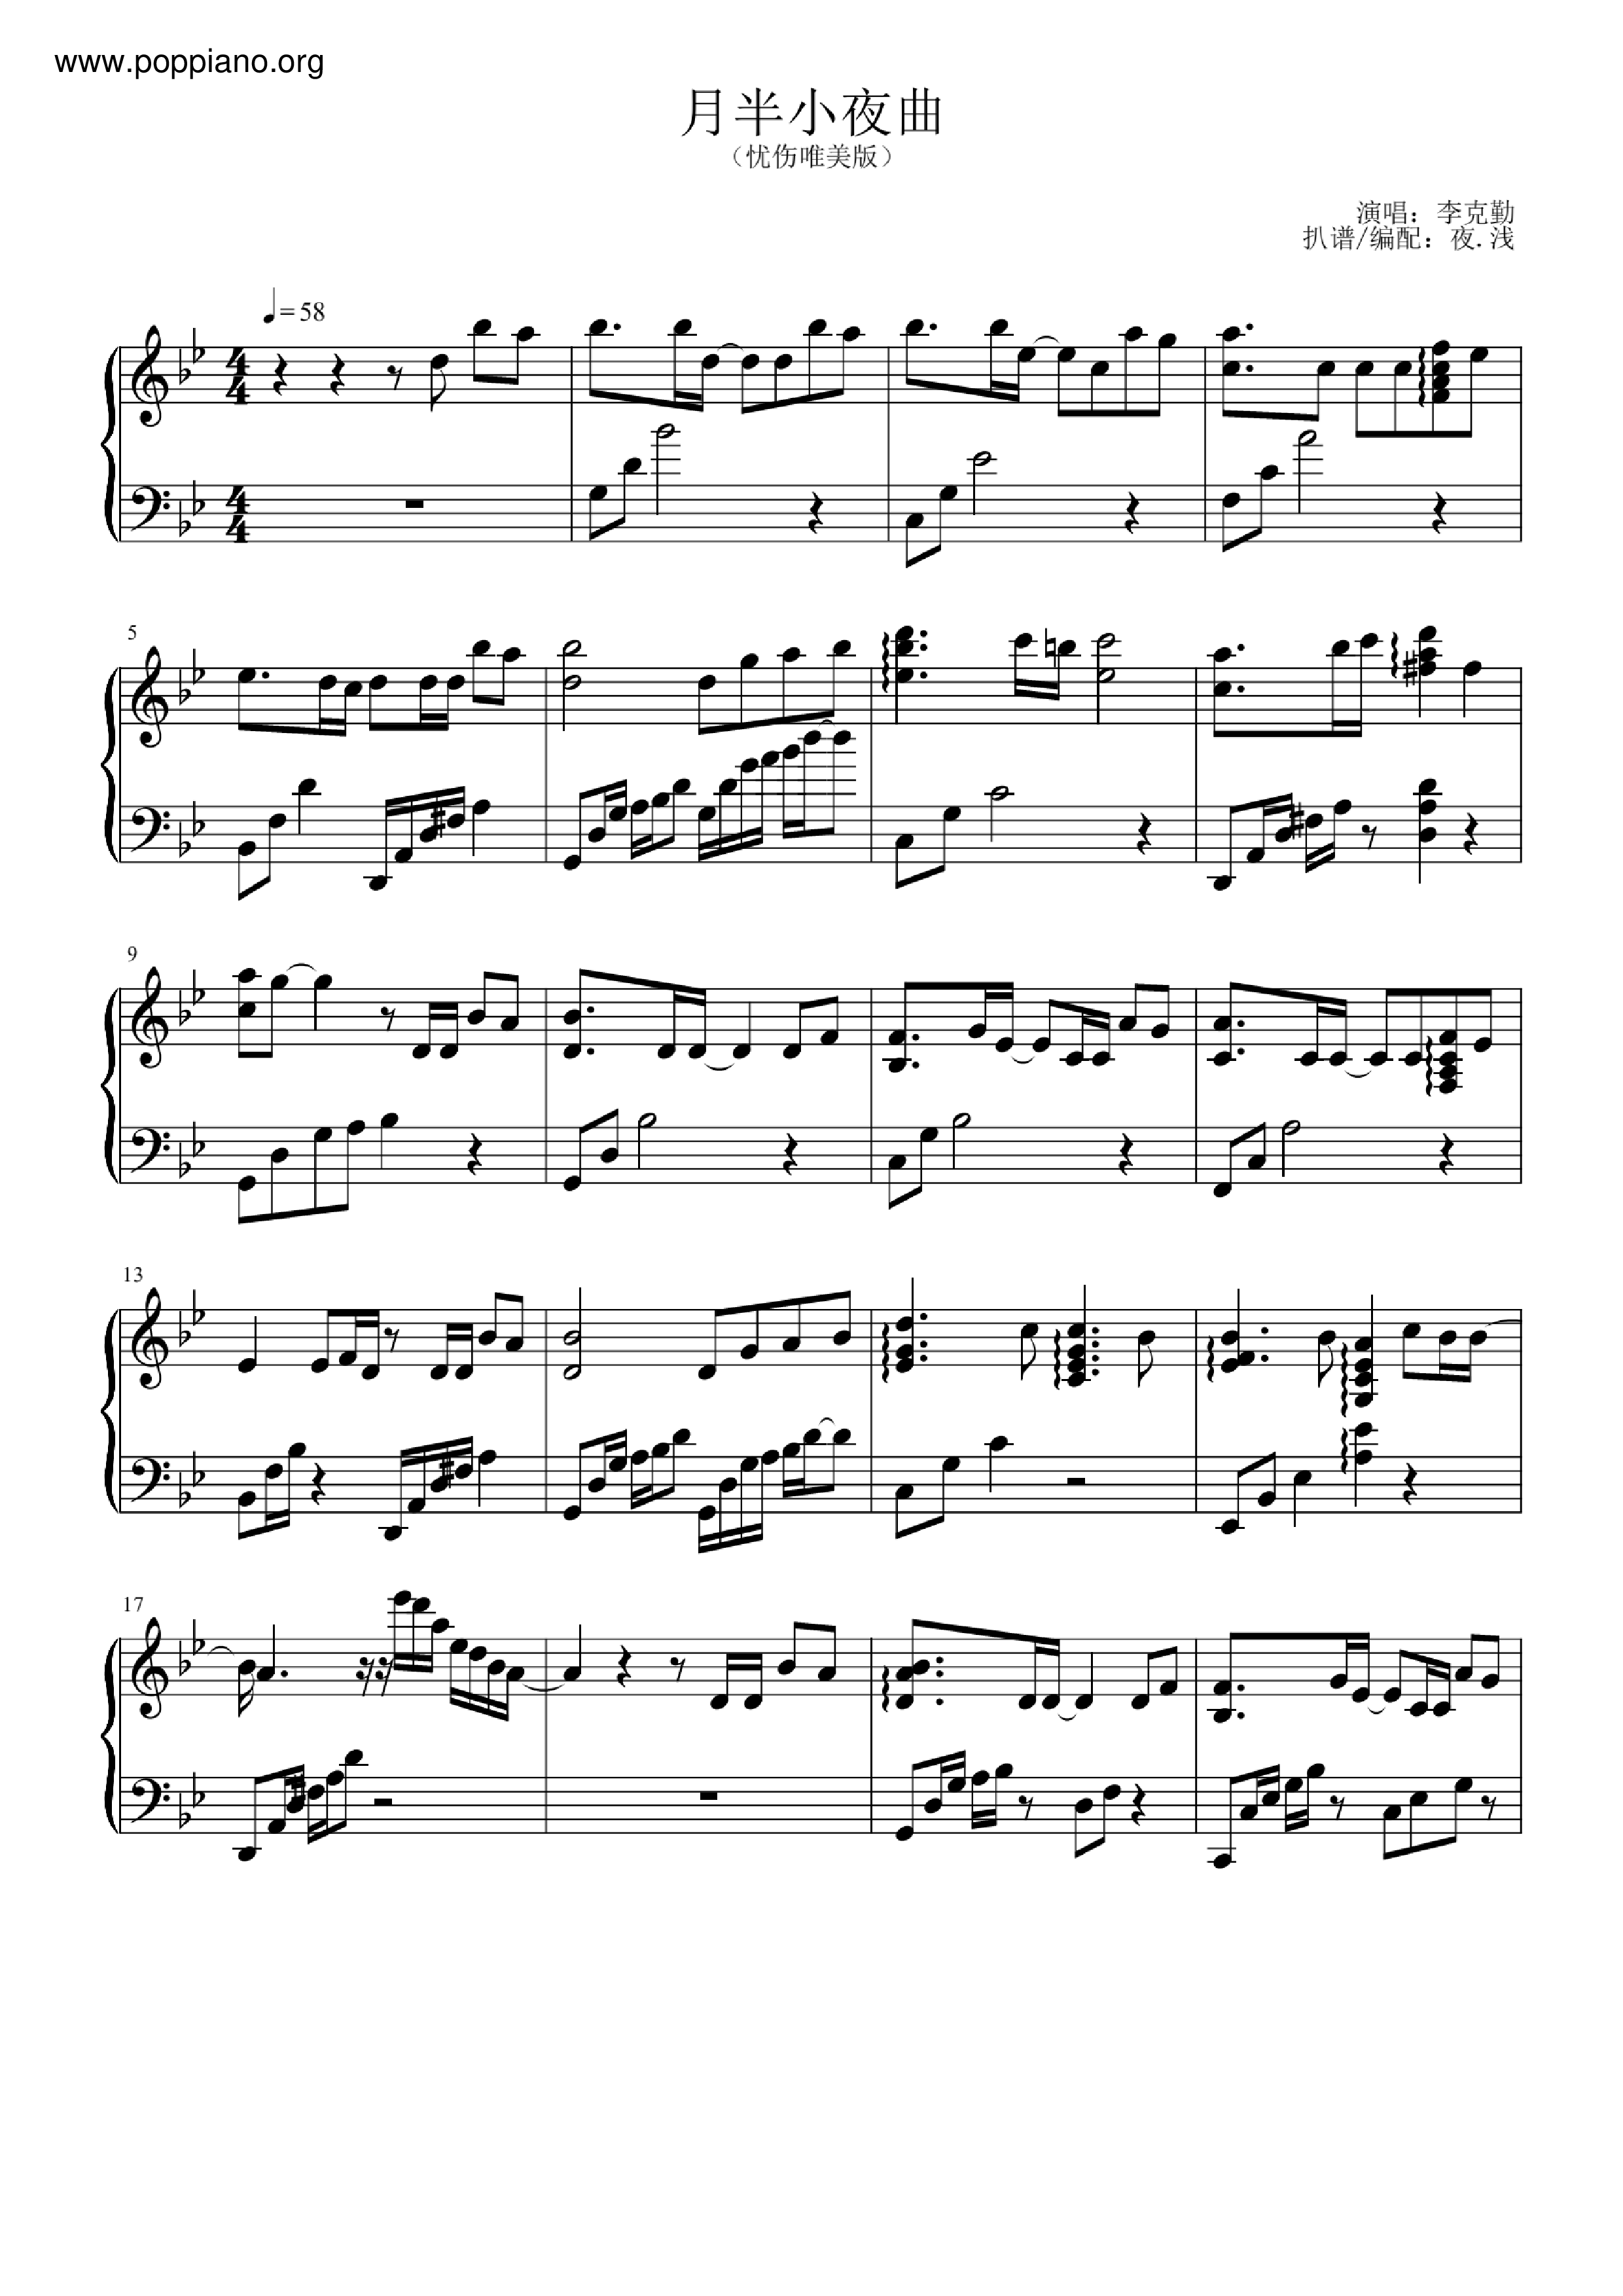 Moonlight Serenade Score